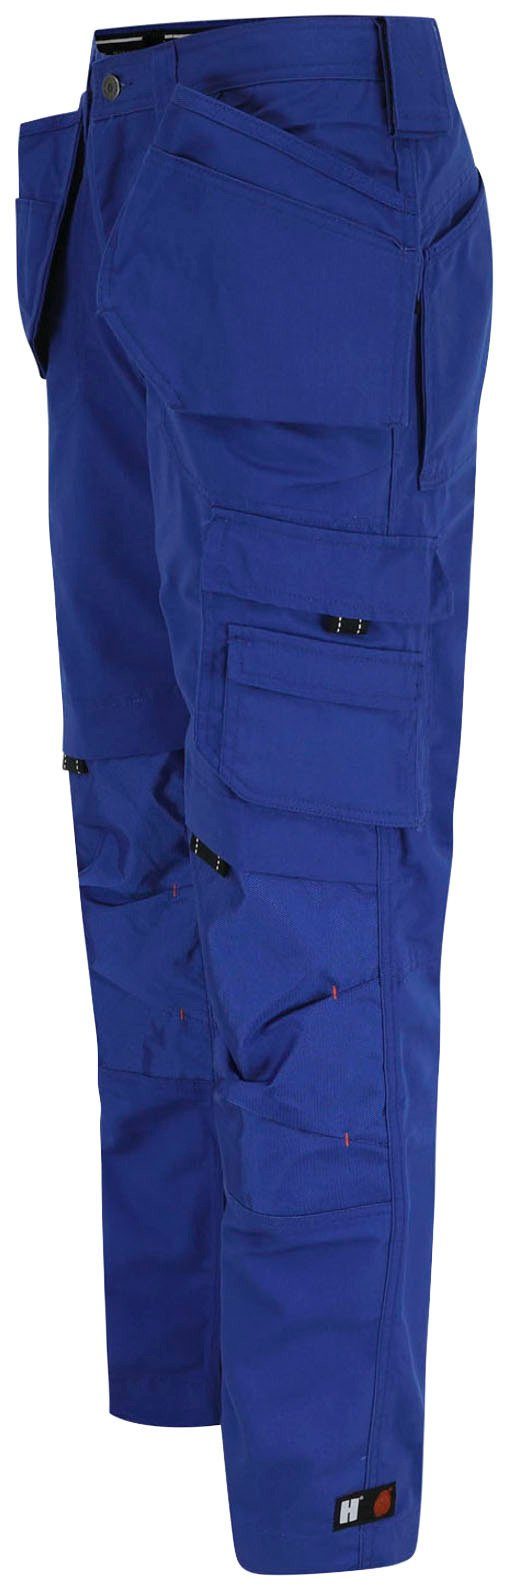 Hose Dagan Herock robust, (inkl. Nageltaschen) Arbeitshose blau 11 Taschen Wasserabweisend,